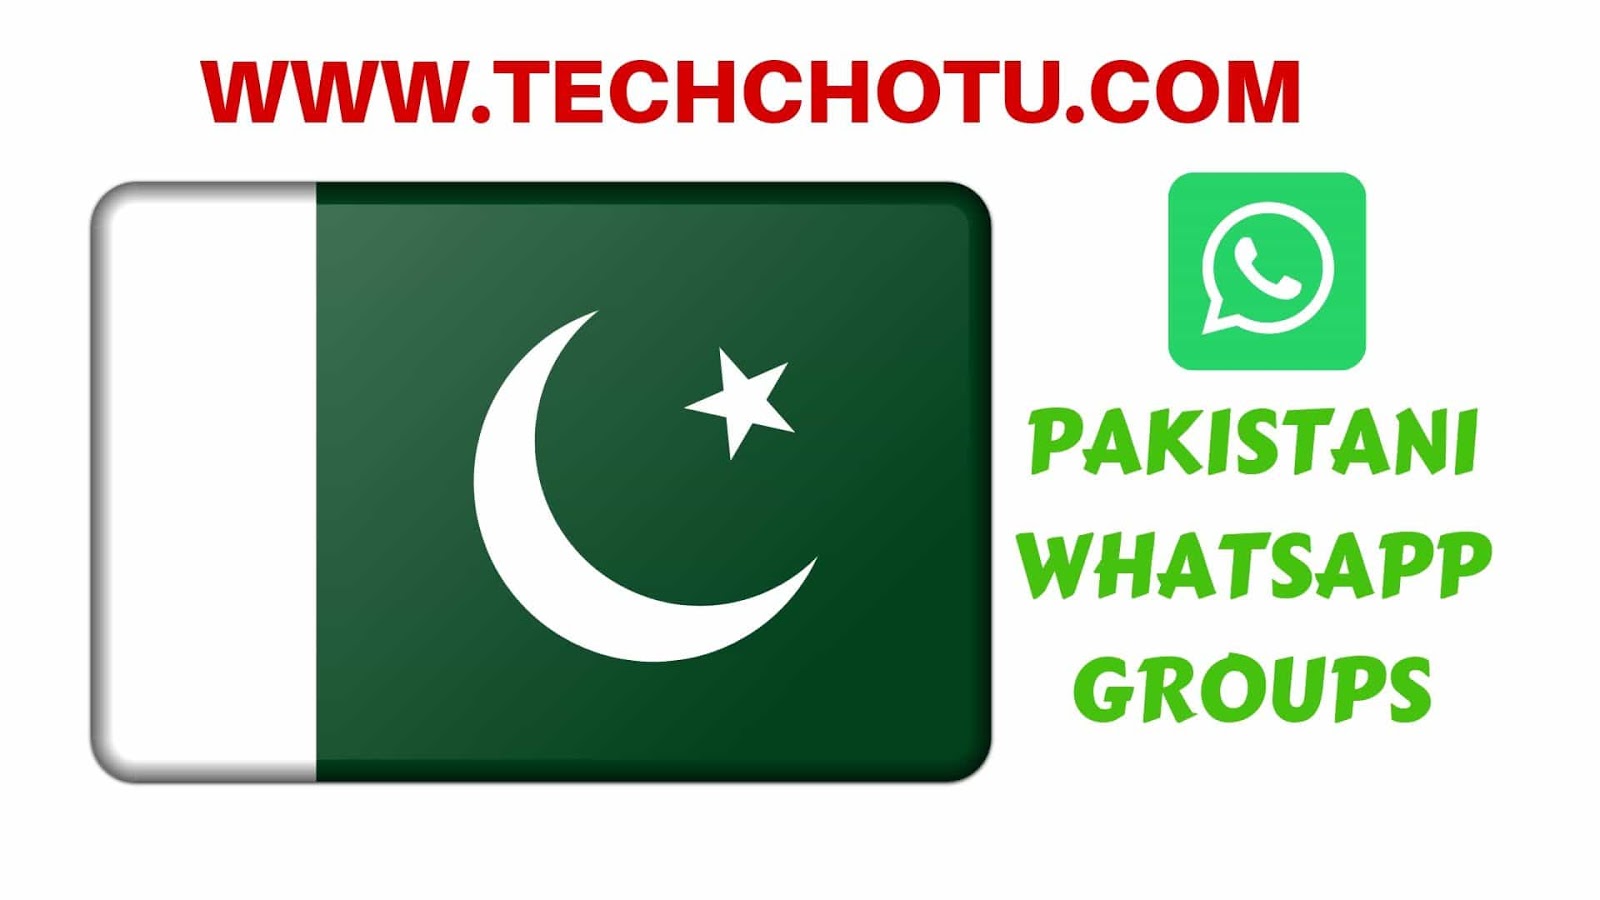 Whatsapp Sex Pakistan - PAKISTANI WHATSAPP GROUP LINKS - TECHCHOTU:WhatsApp Group Links ...